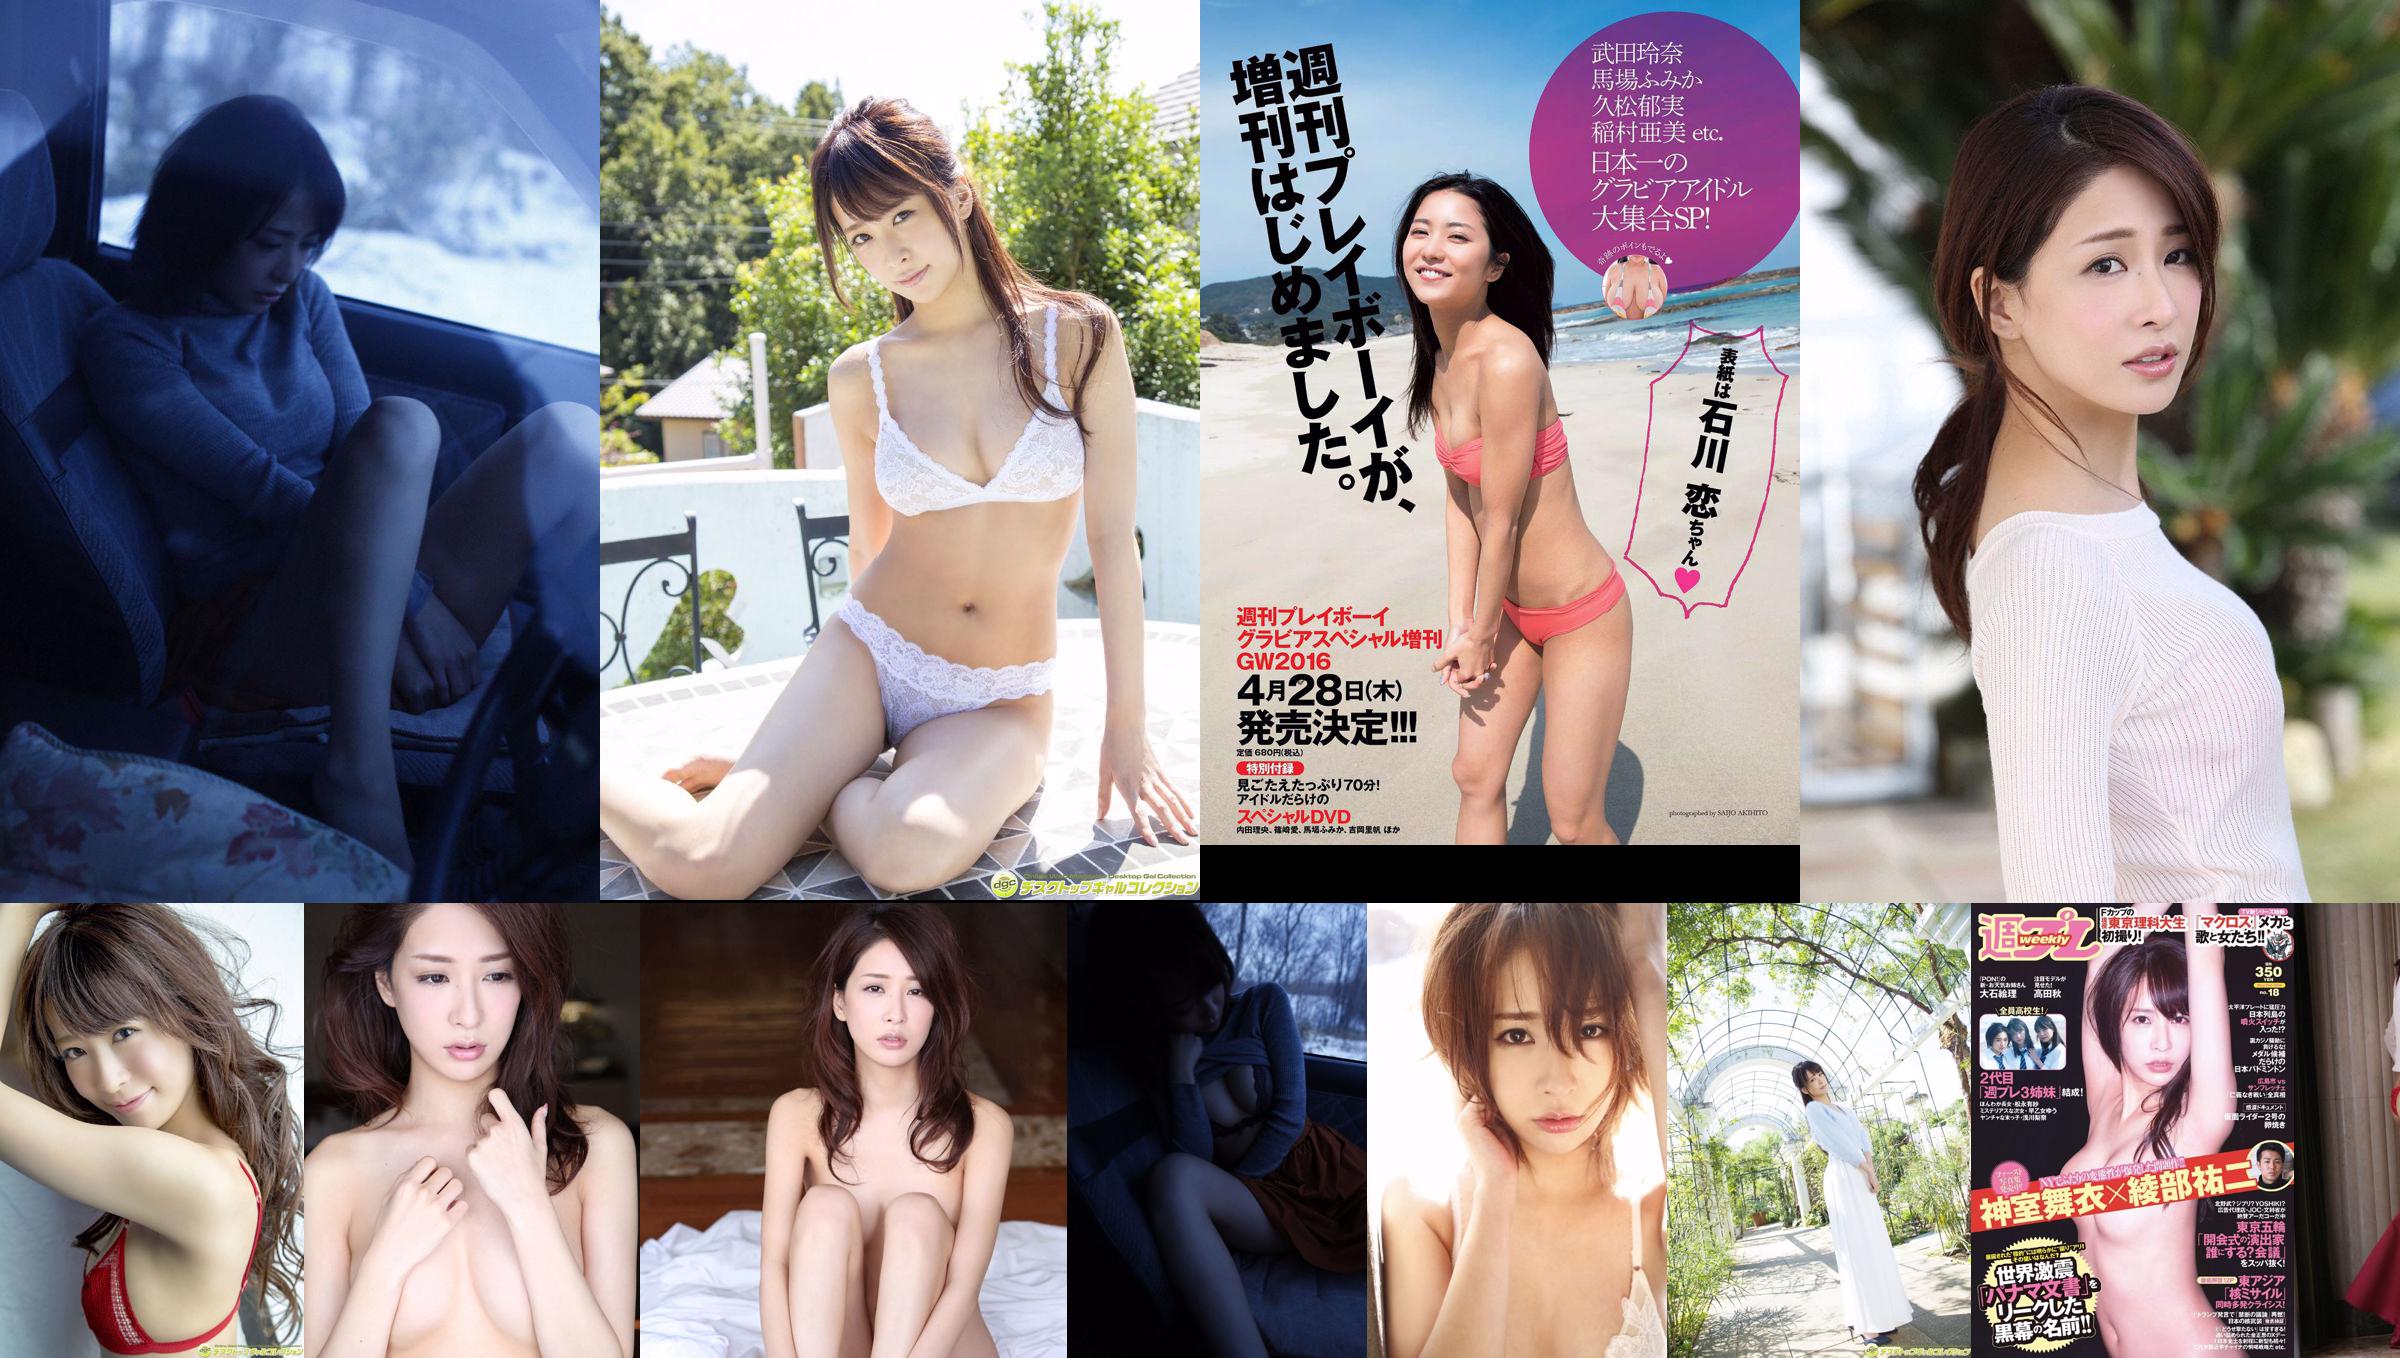 Mai Kamuro Arisa Matsunaga Yu Saotome Rina Asakawa Shu Takada Ayana Takeda Eri Oishi [wekelijkse Playboy] 2016 nr 18 foto No.b1f531 Pagina 4